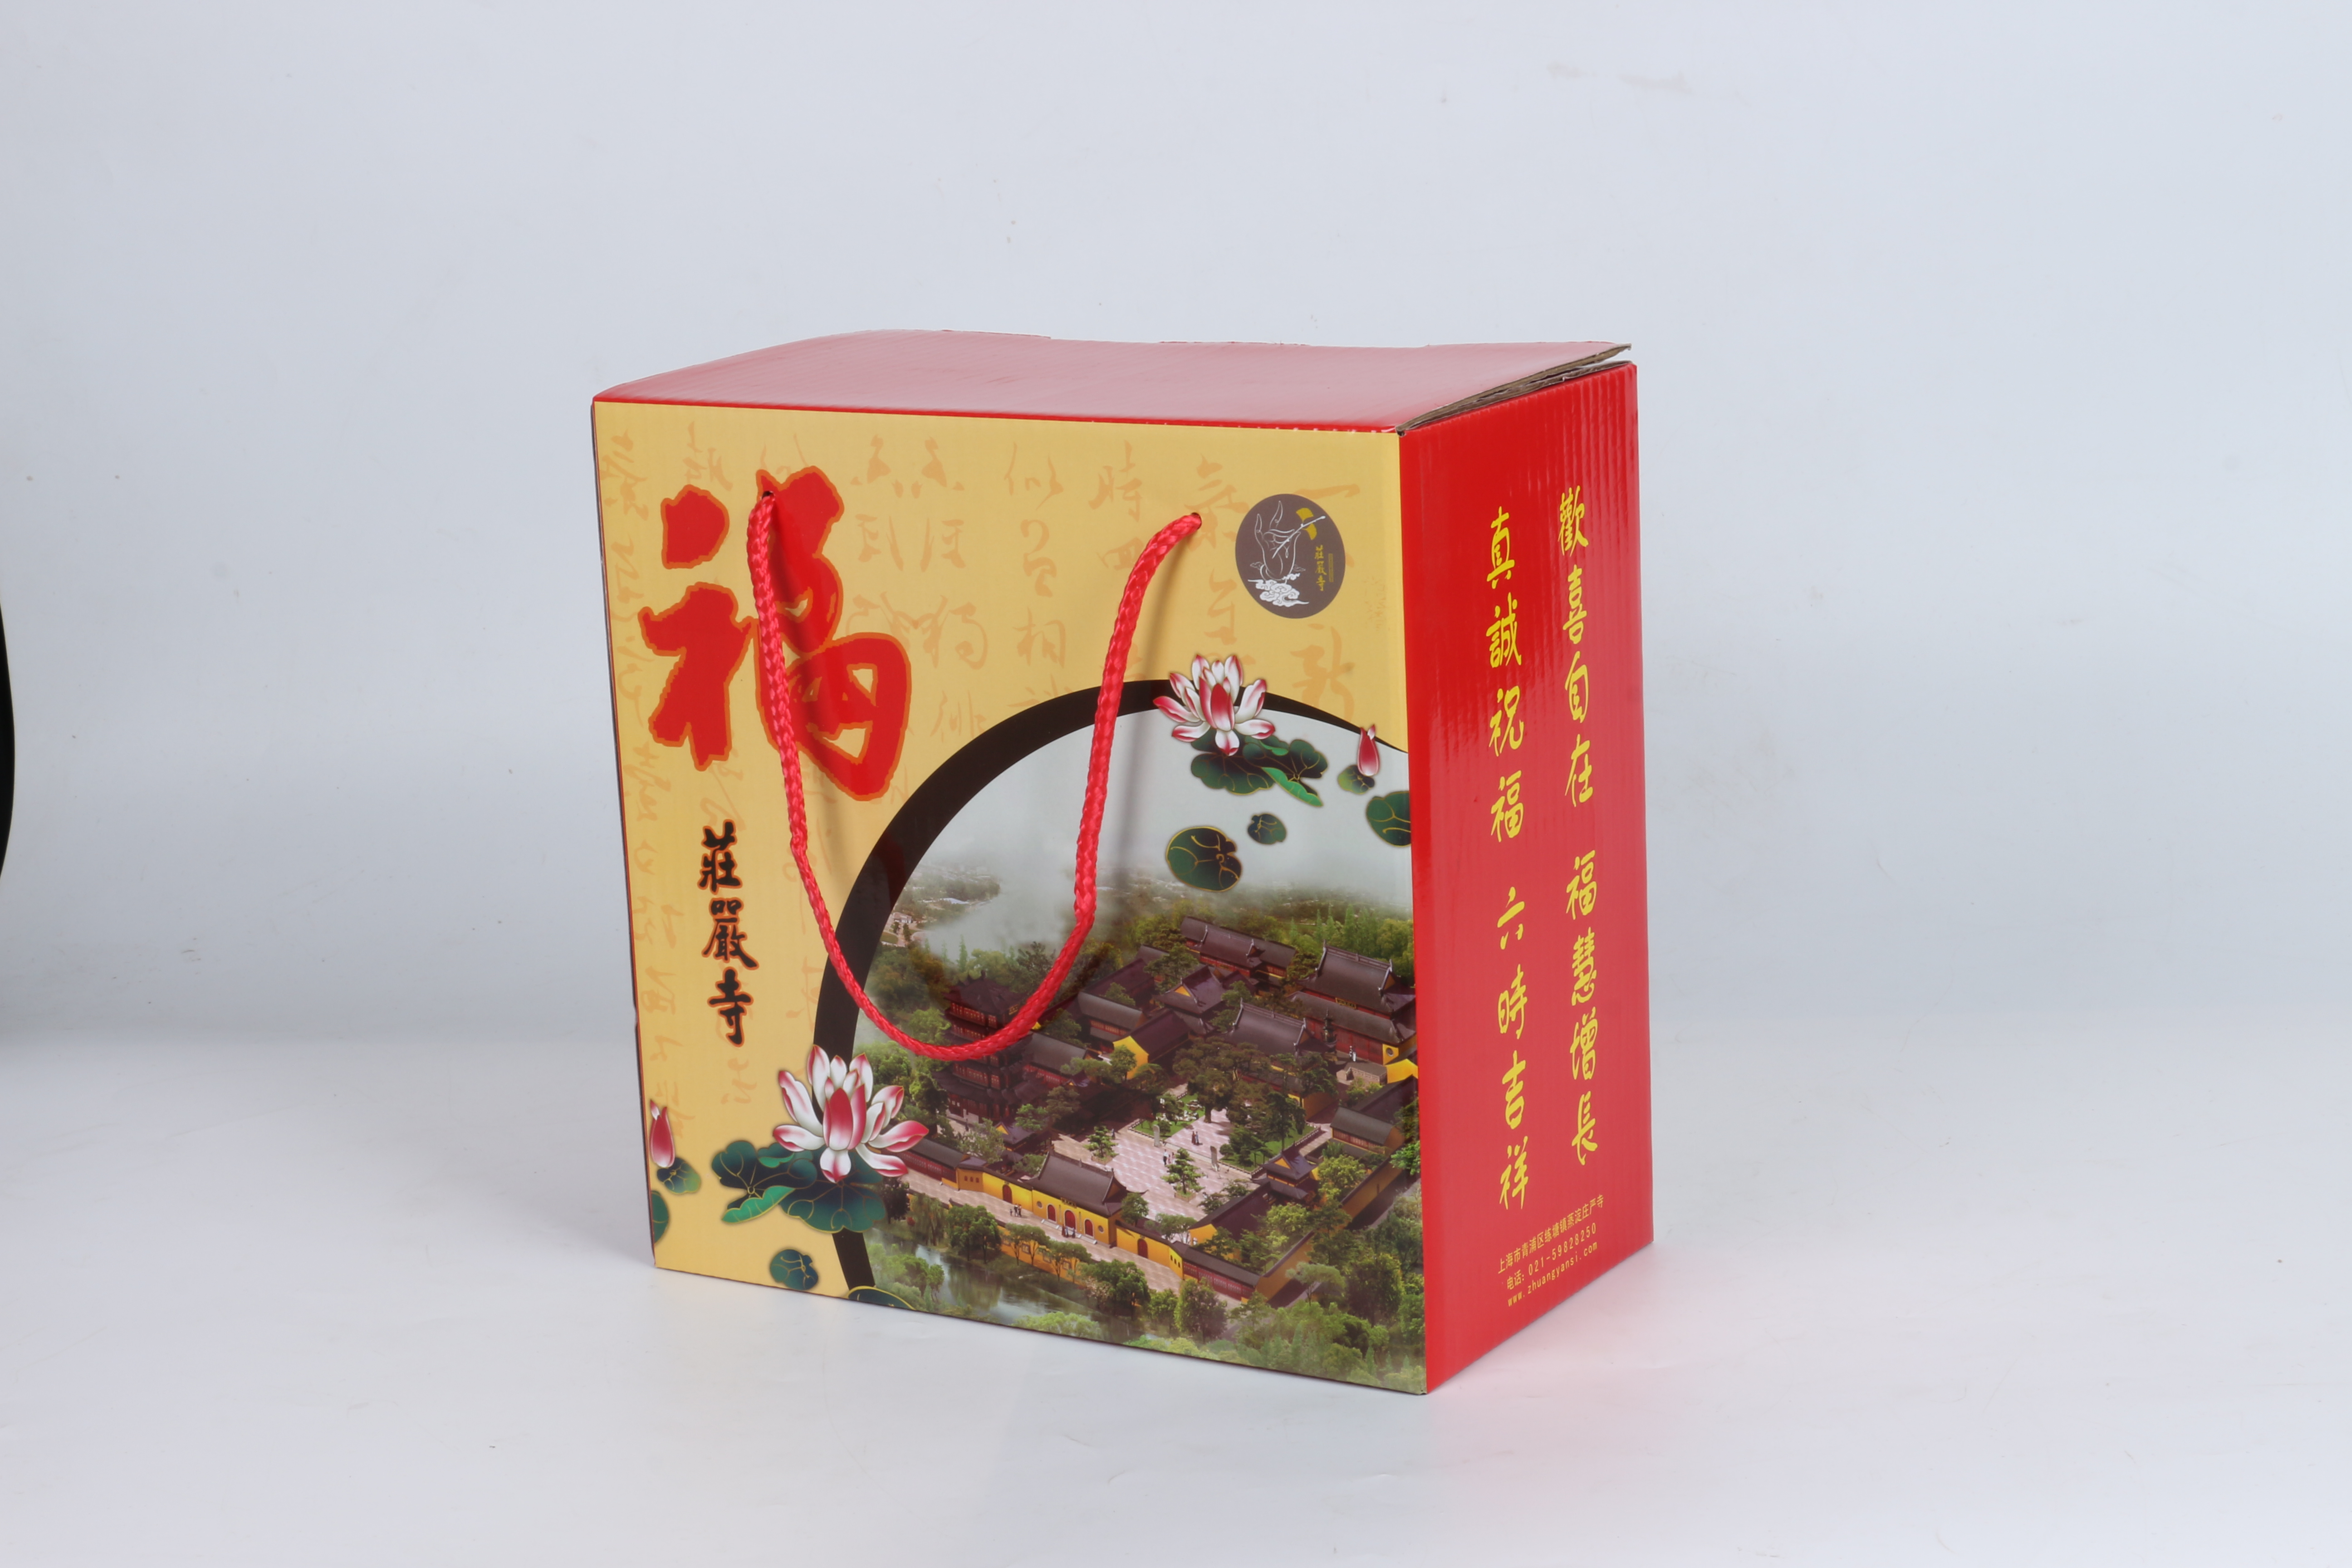 上海特产包装 茶叶包装 茶叶礼盒 素饼包装 食品包装  地方特产包装图片